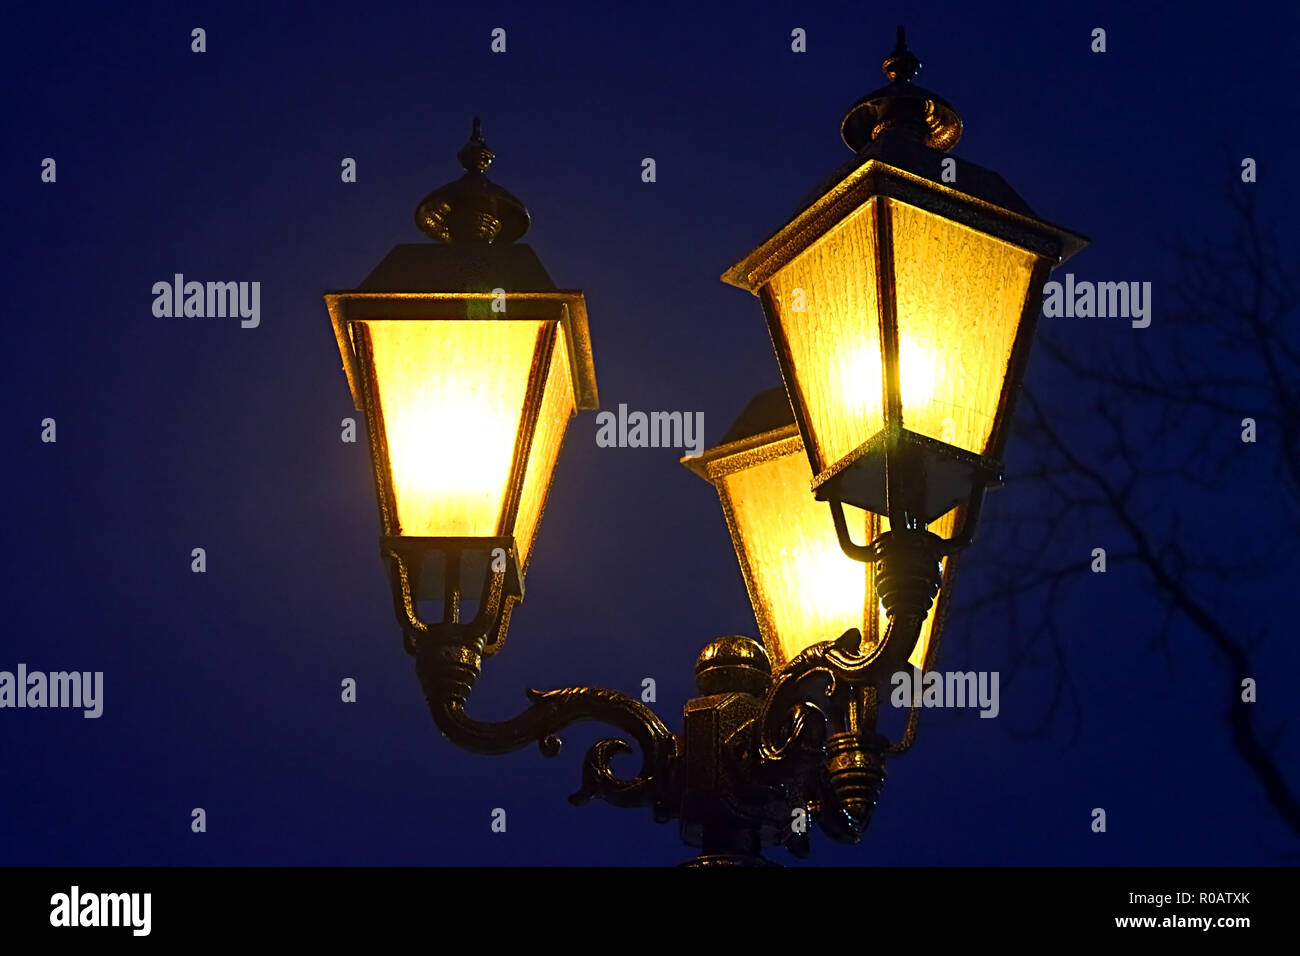 Lampadaire de rue la nuit Photo Stock - Alamy